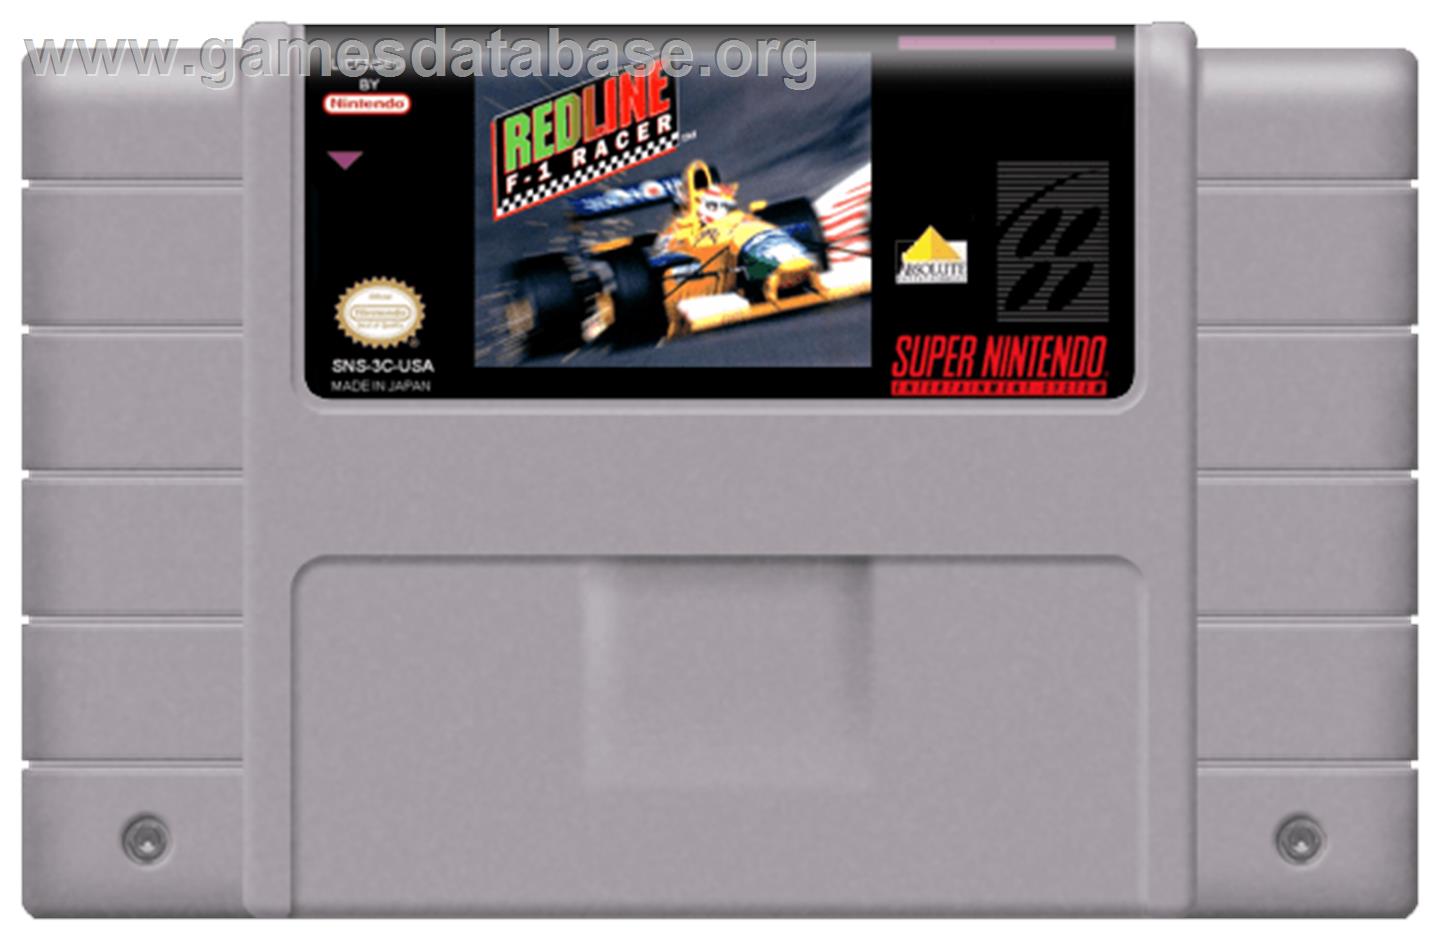 Redline: F1 Racer - Nintendo SNES - Artwork - Cartridge